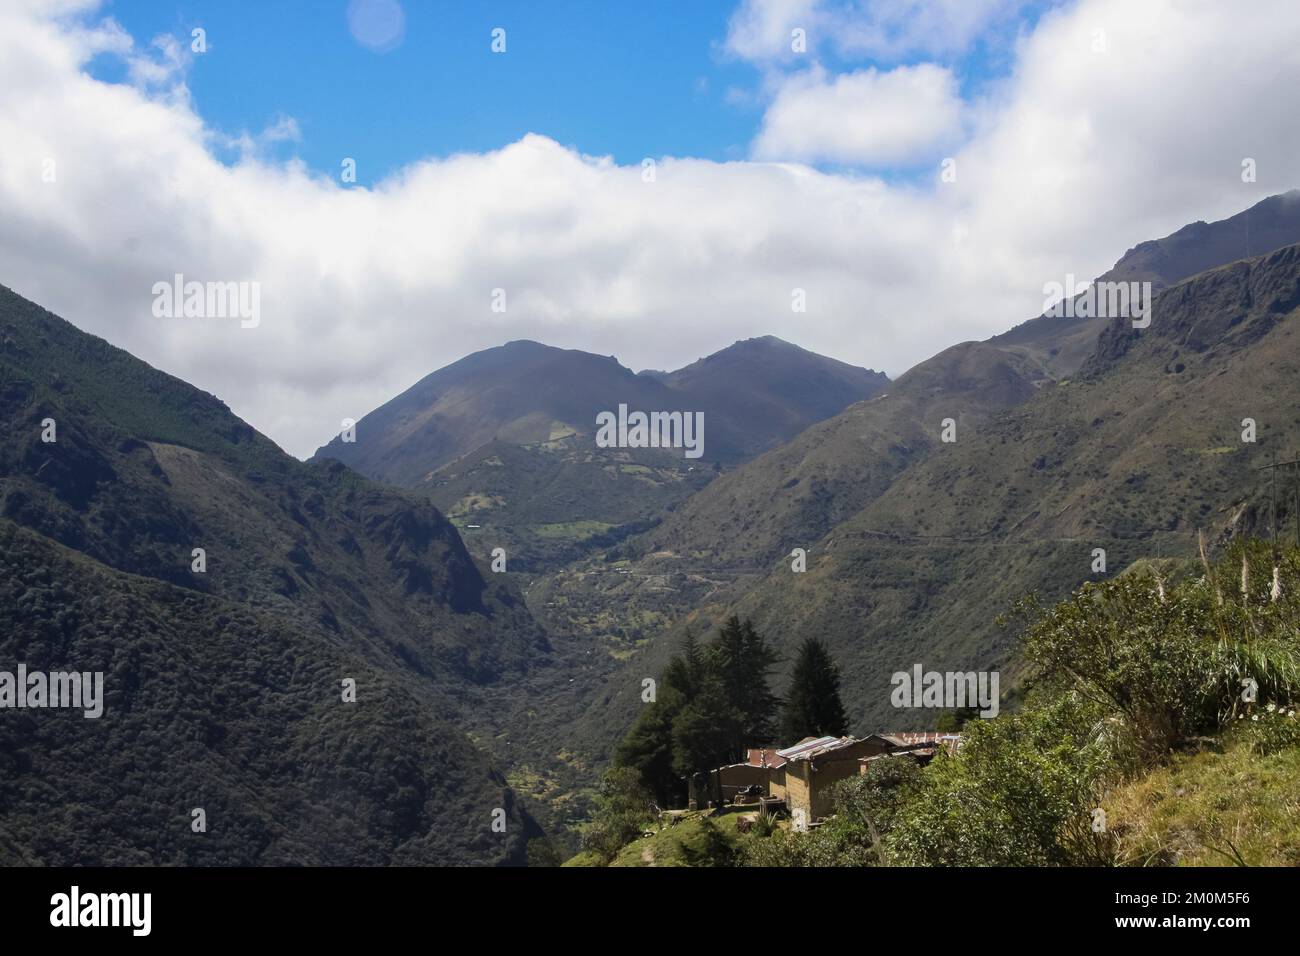 Parque Nacional cajas, Azuay, Équateur. Le parc national d'El cajas ou le parc national de cajas est un parc national situé dans les hauts plateaux de l'Équateur. dans la province o Banque D'Images